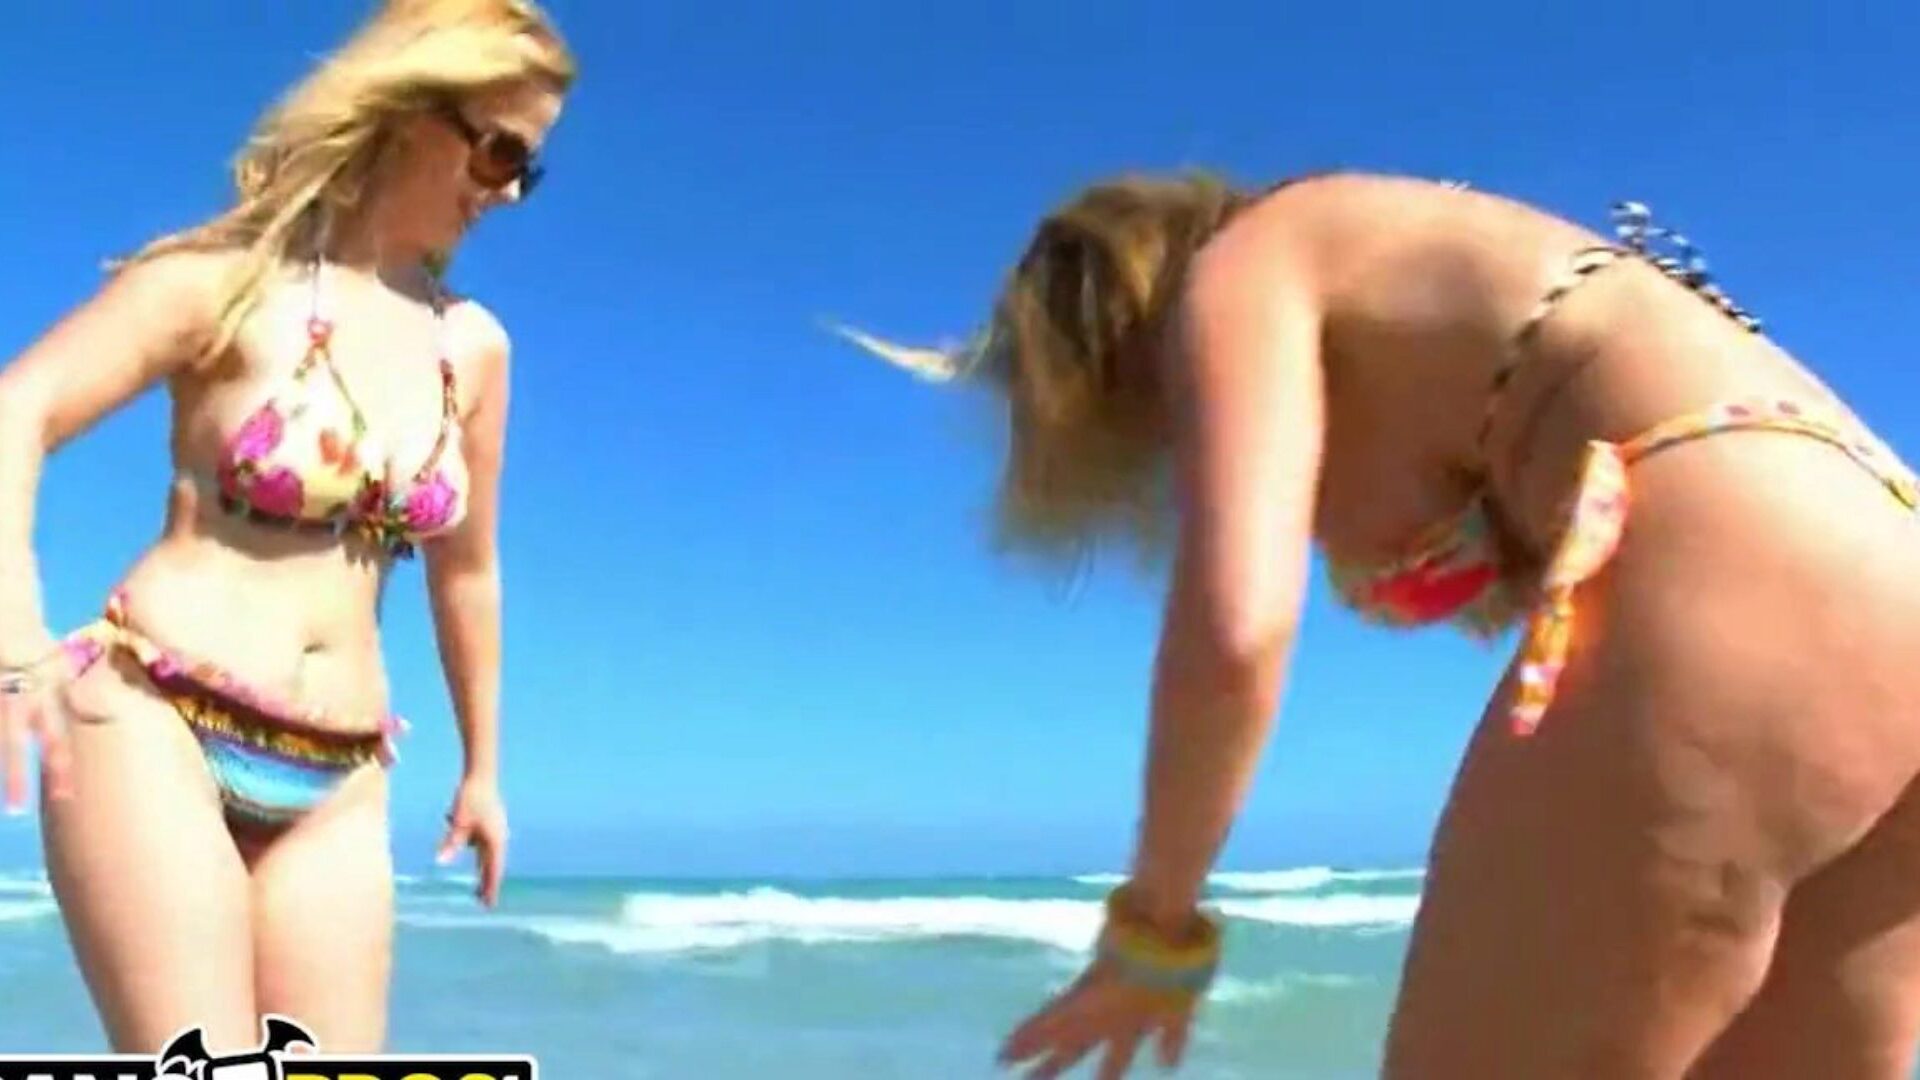 bangbros - Sarah Jay og Krystal Star viser deres store æsler på stranden